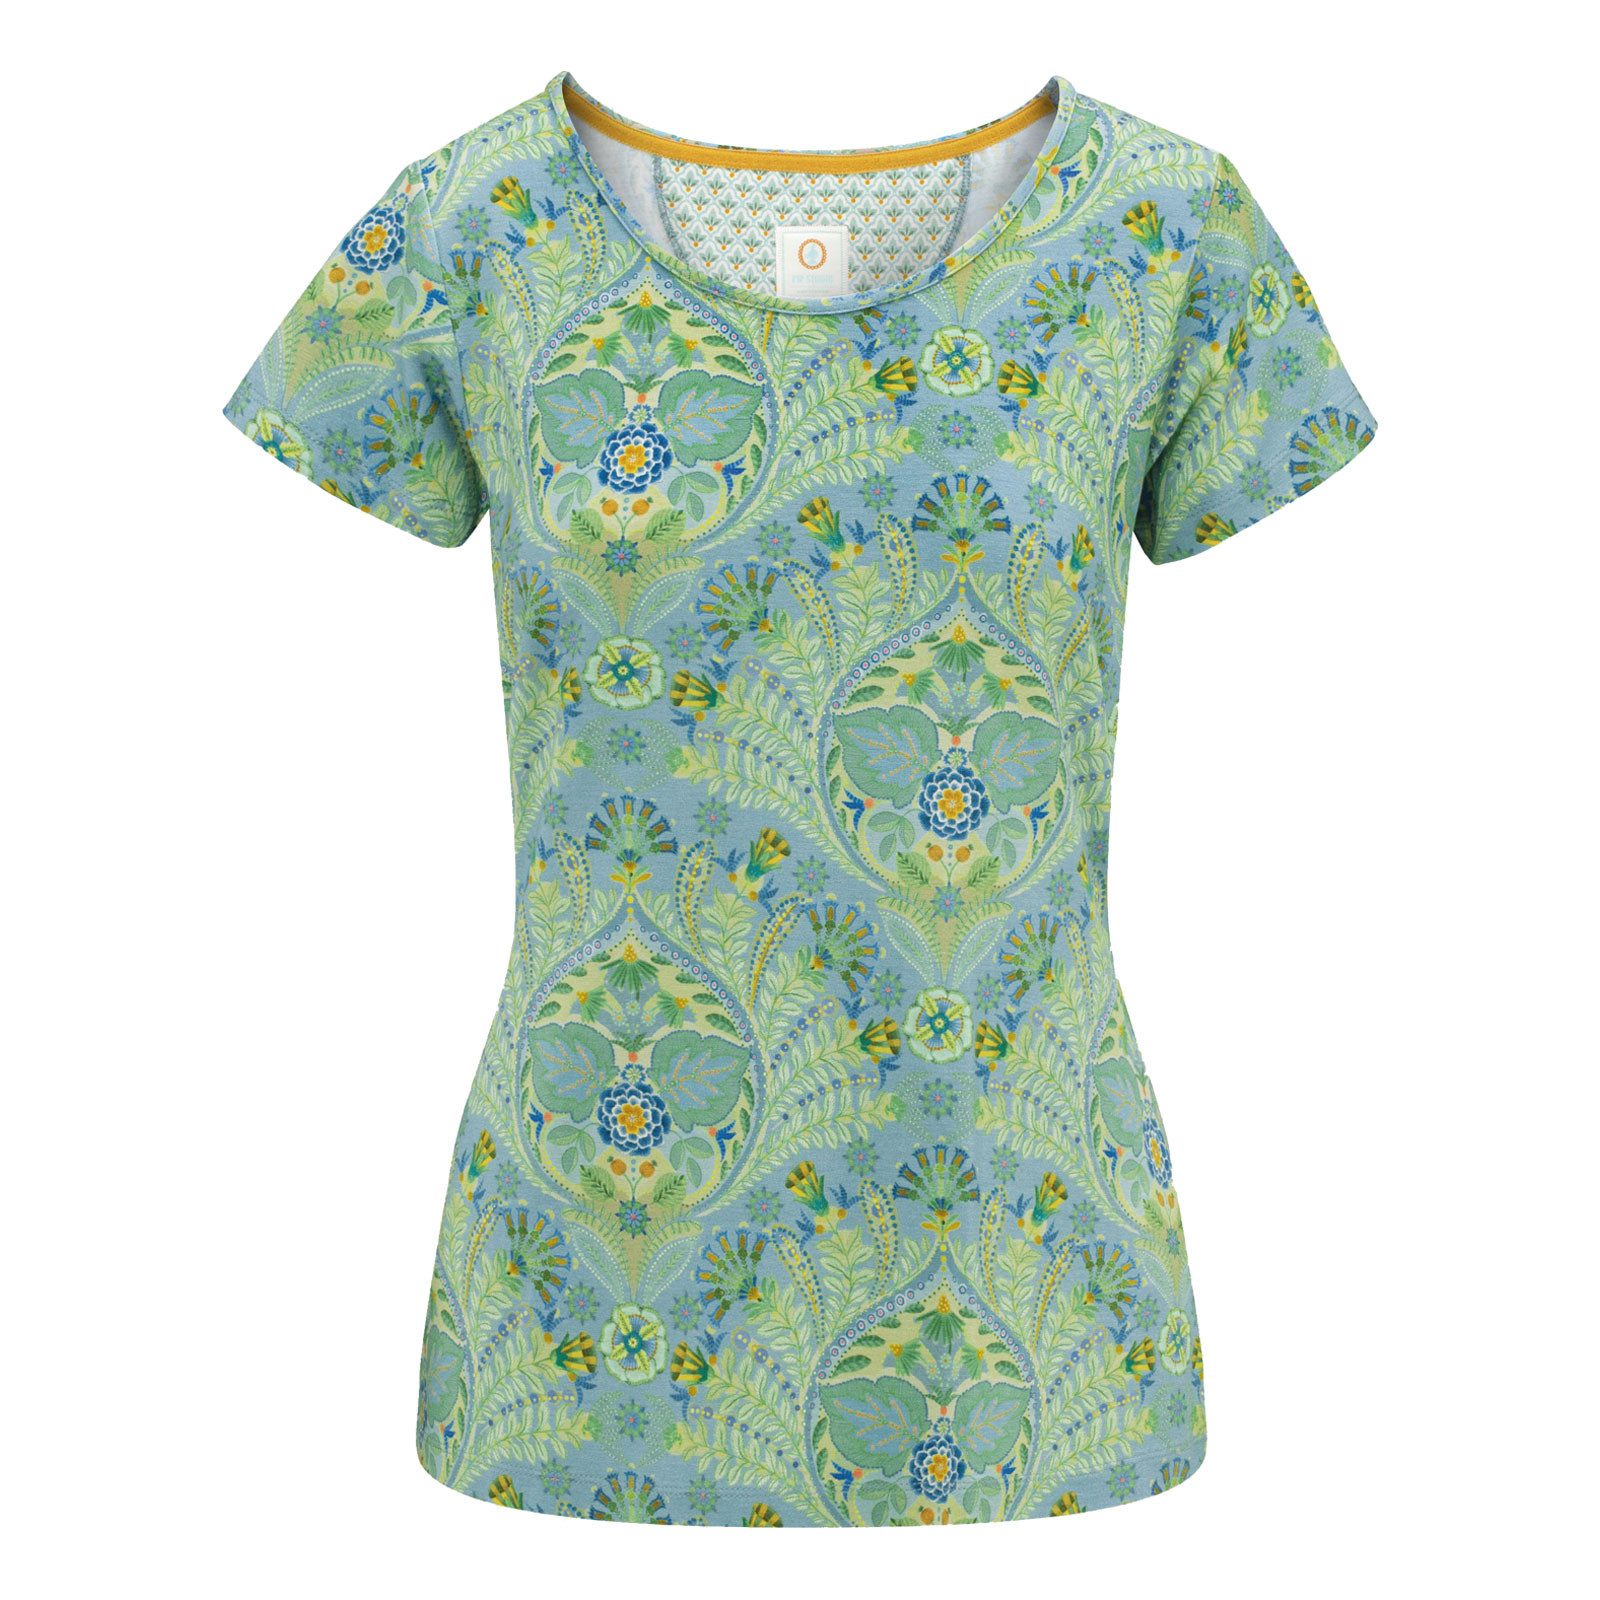 PiP Studio T-Shirt Tilly Short Sleeve Top Alba mit floralem Muster